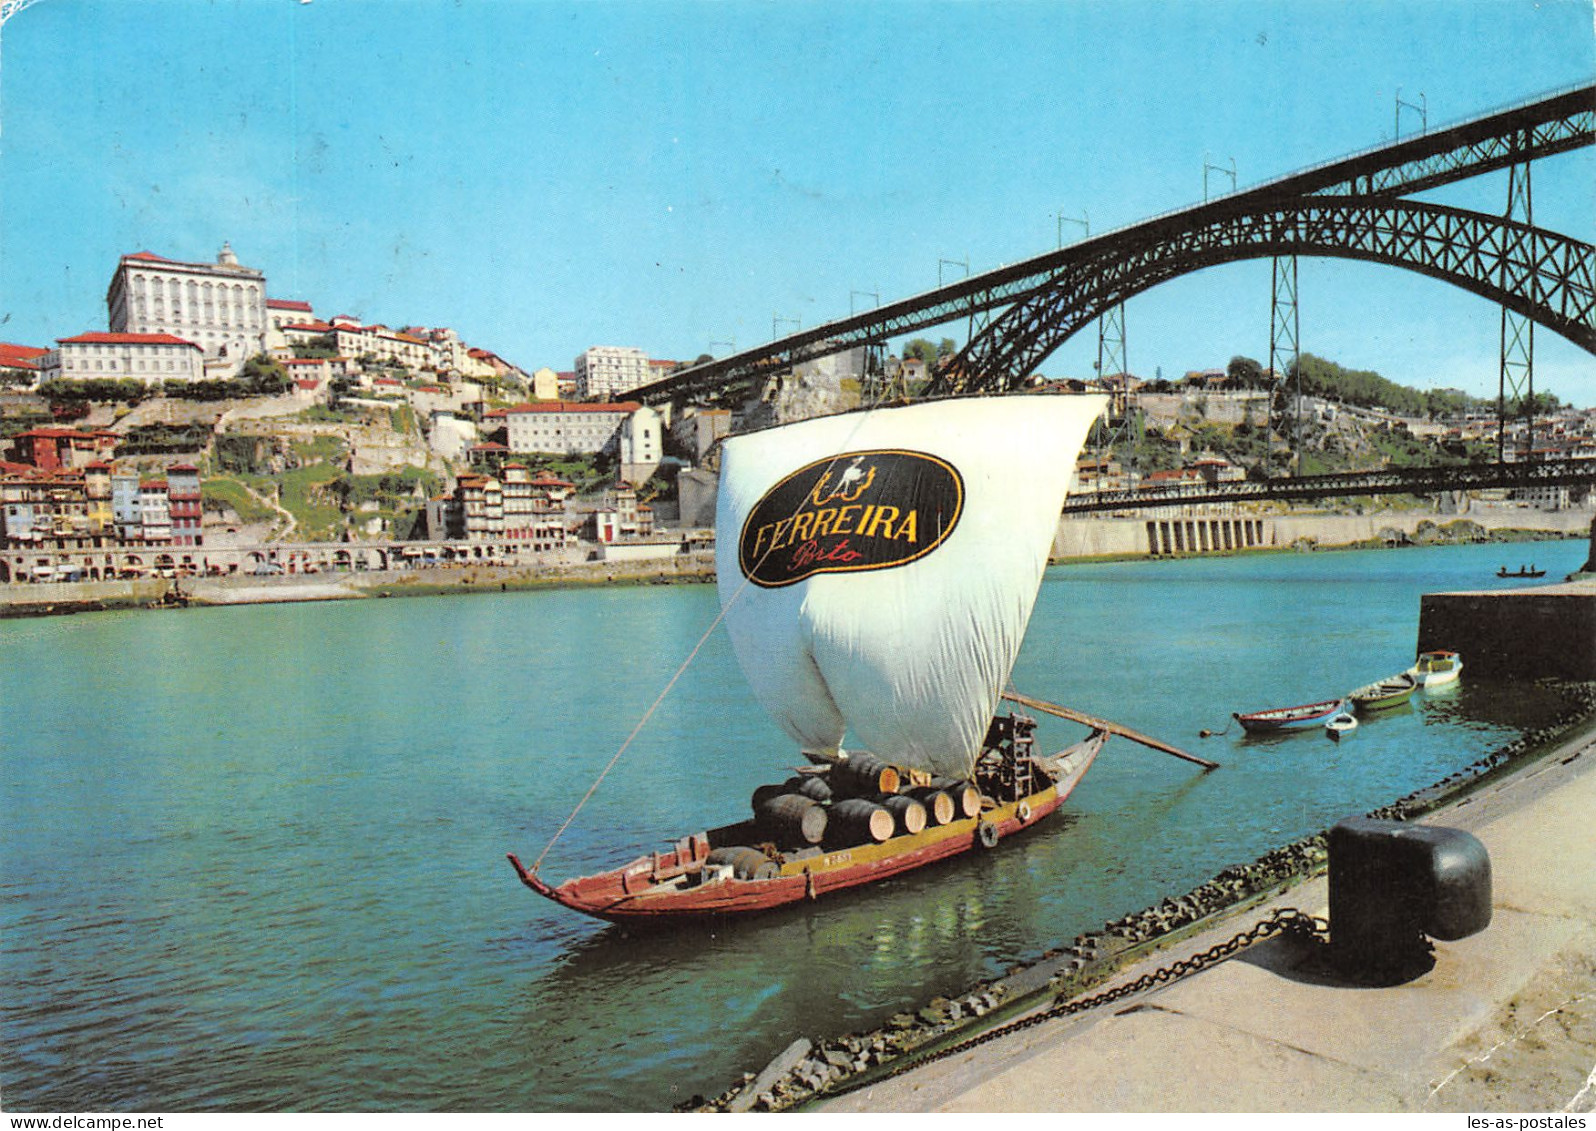 Portugal PORTO - Porto